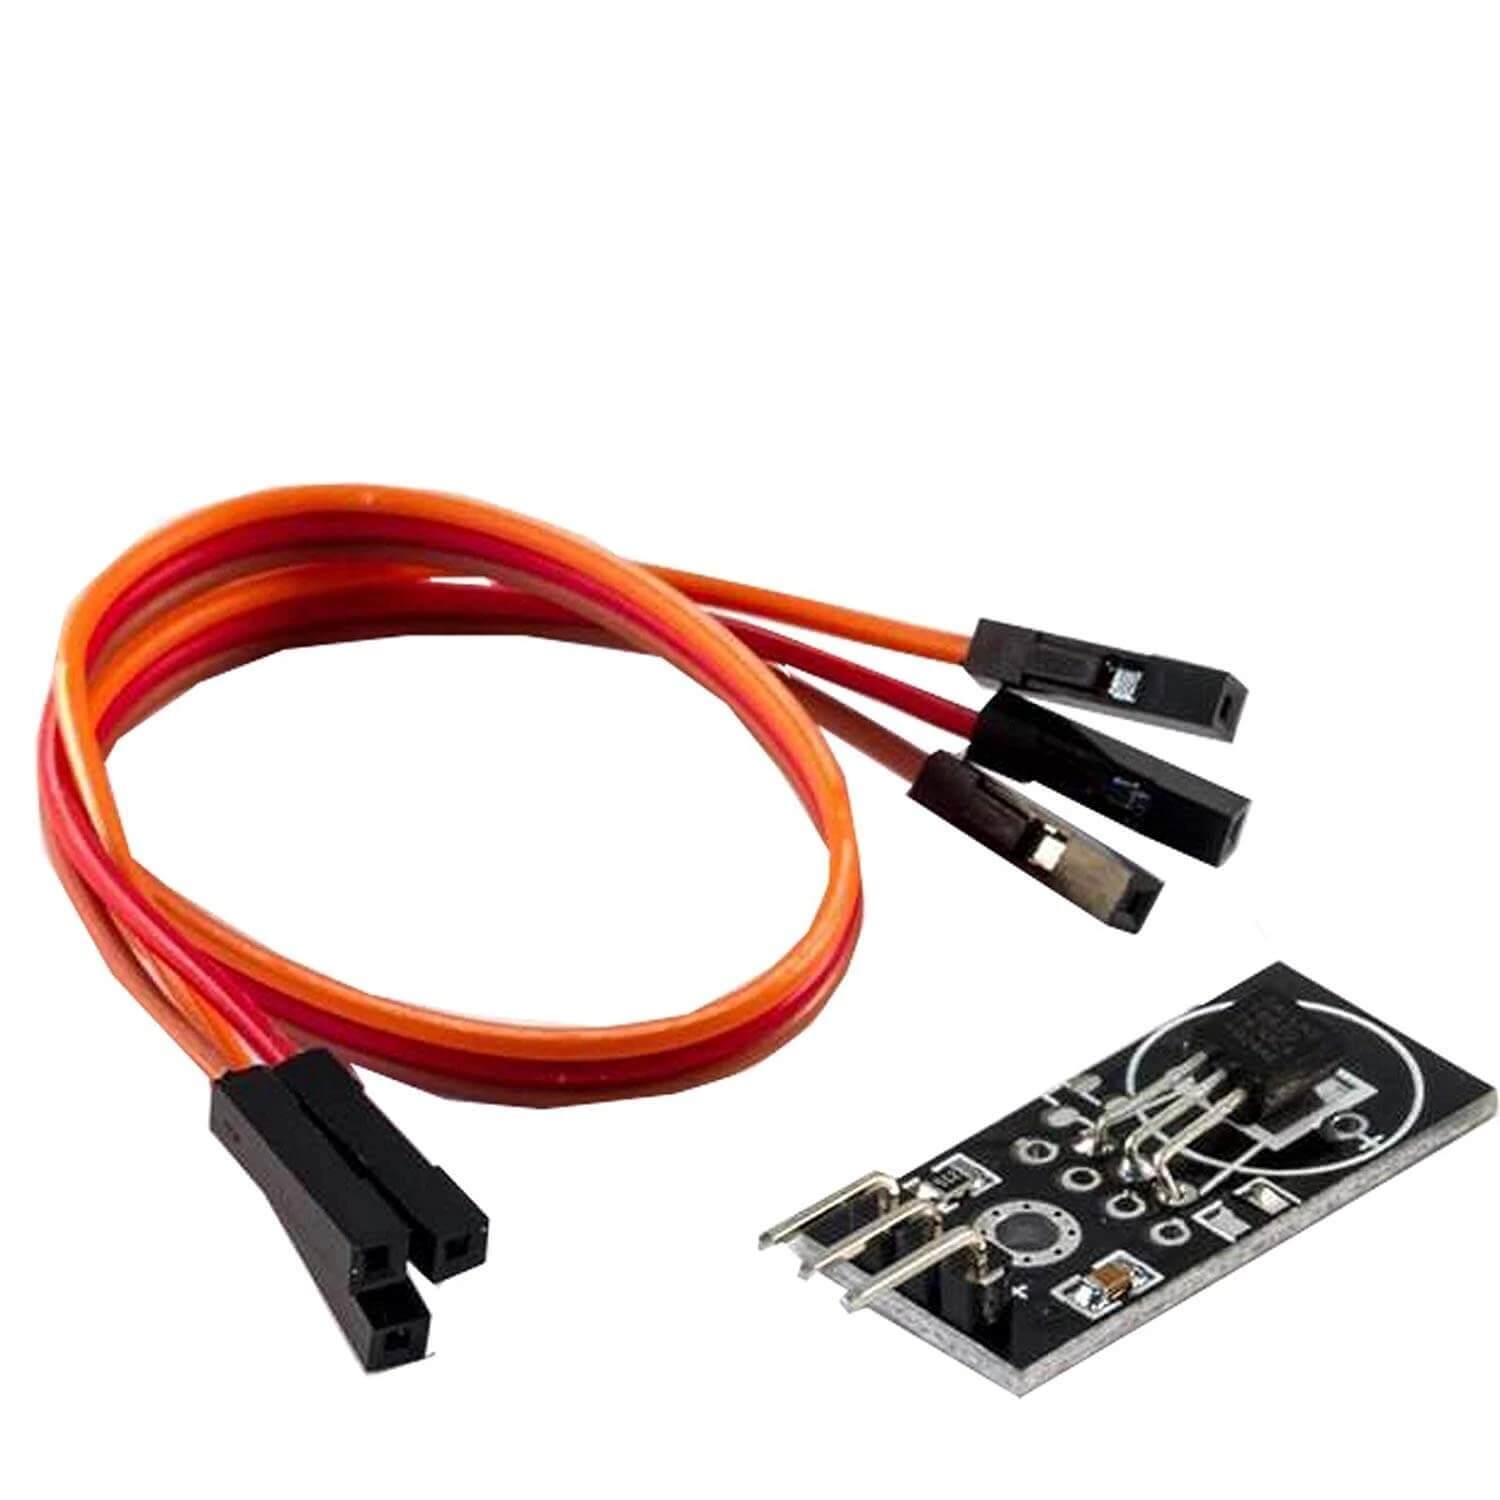 DS18B20 Breakout Modul mit Platine, Jumper Wire Kabel Temperatursensor  Temperaturfühler